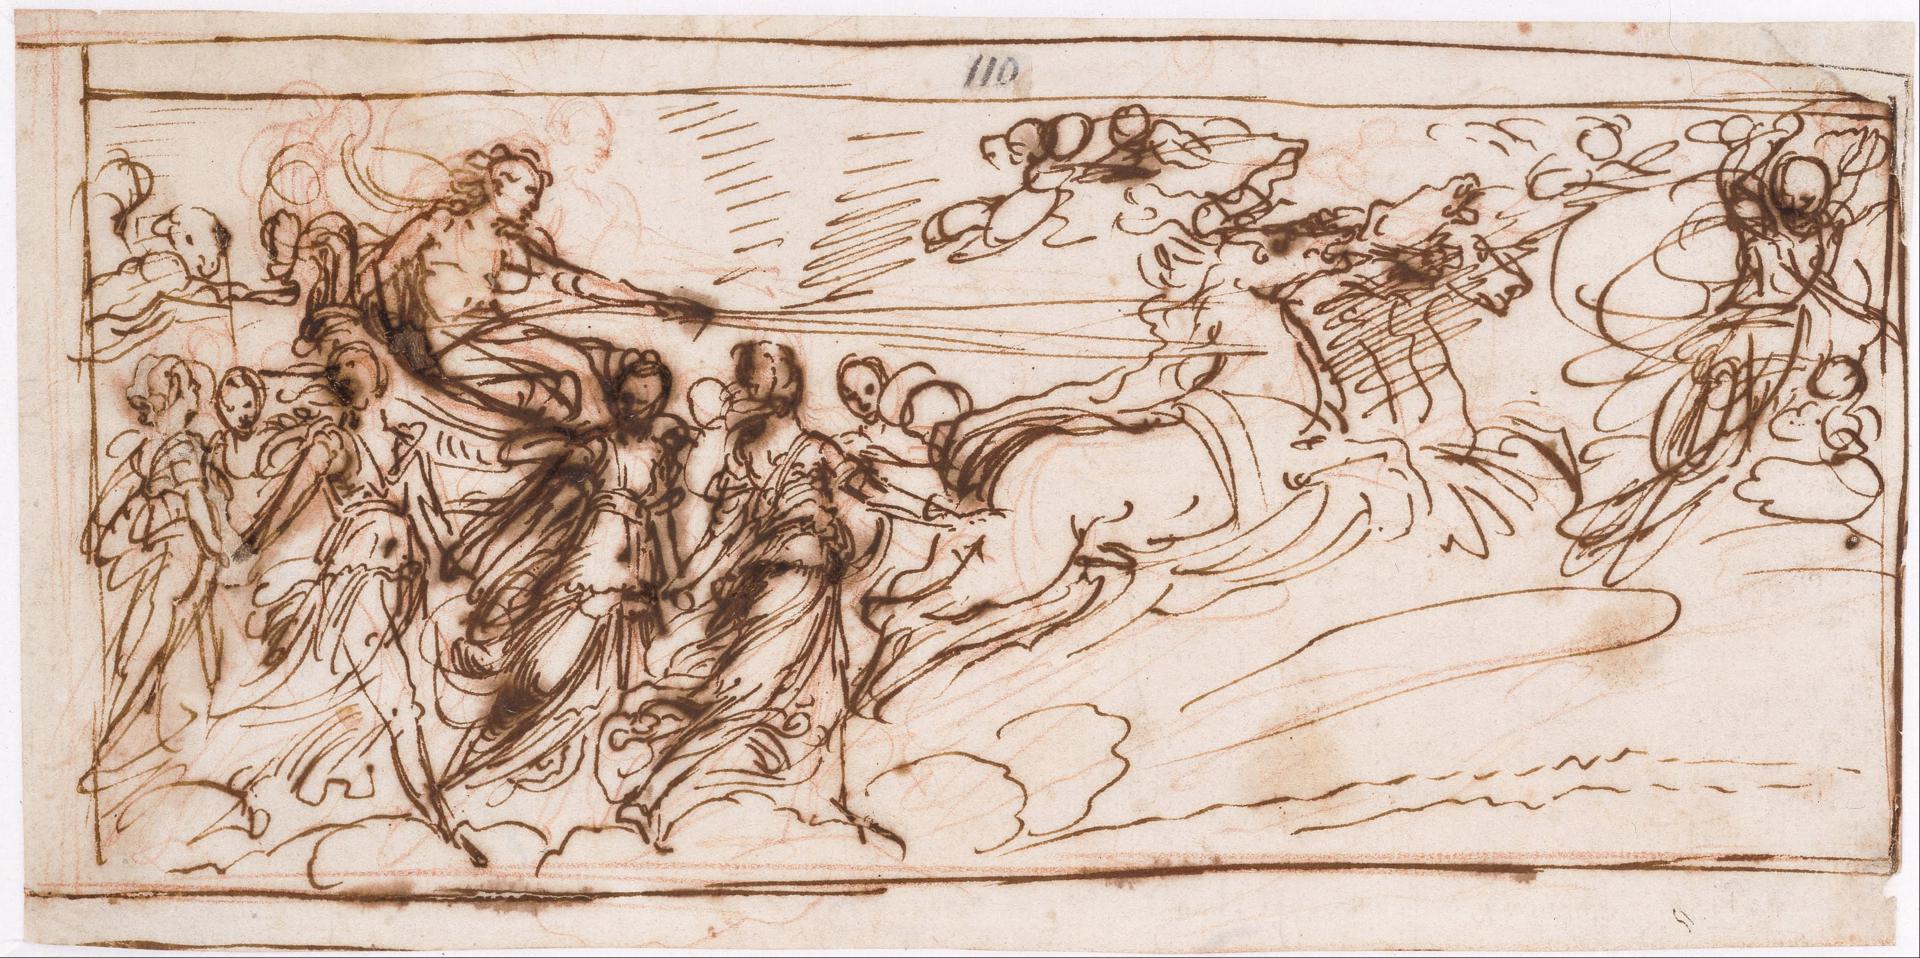 0086_雷尼_Guido Reni 1575–1642-Apollo on the Sun Chariot_3136x1564PX_TIF_97DPI_14_0